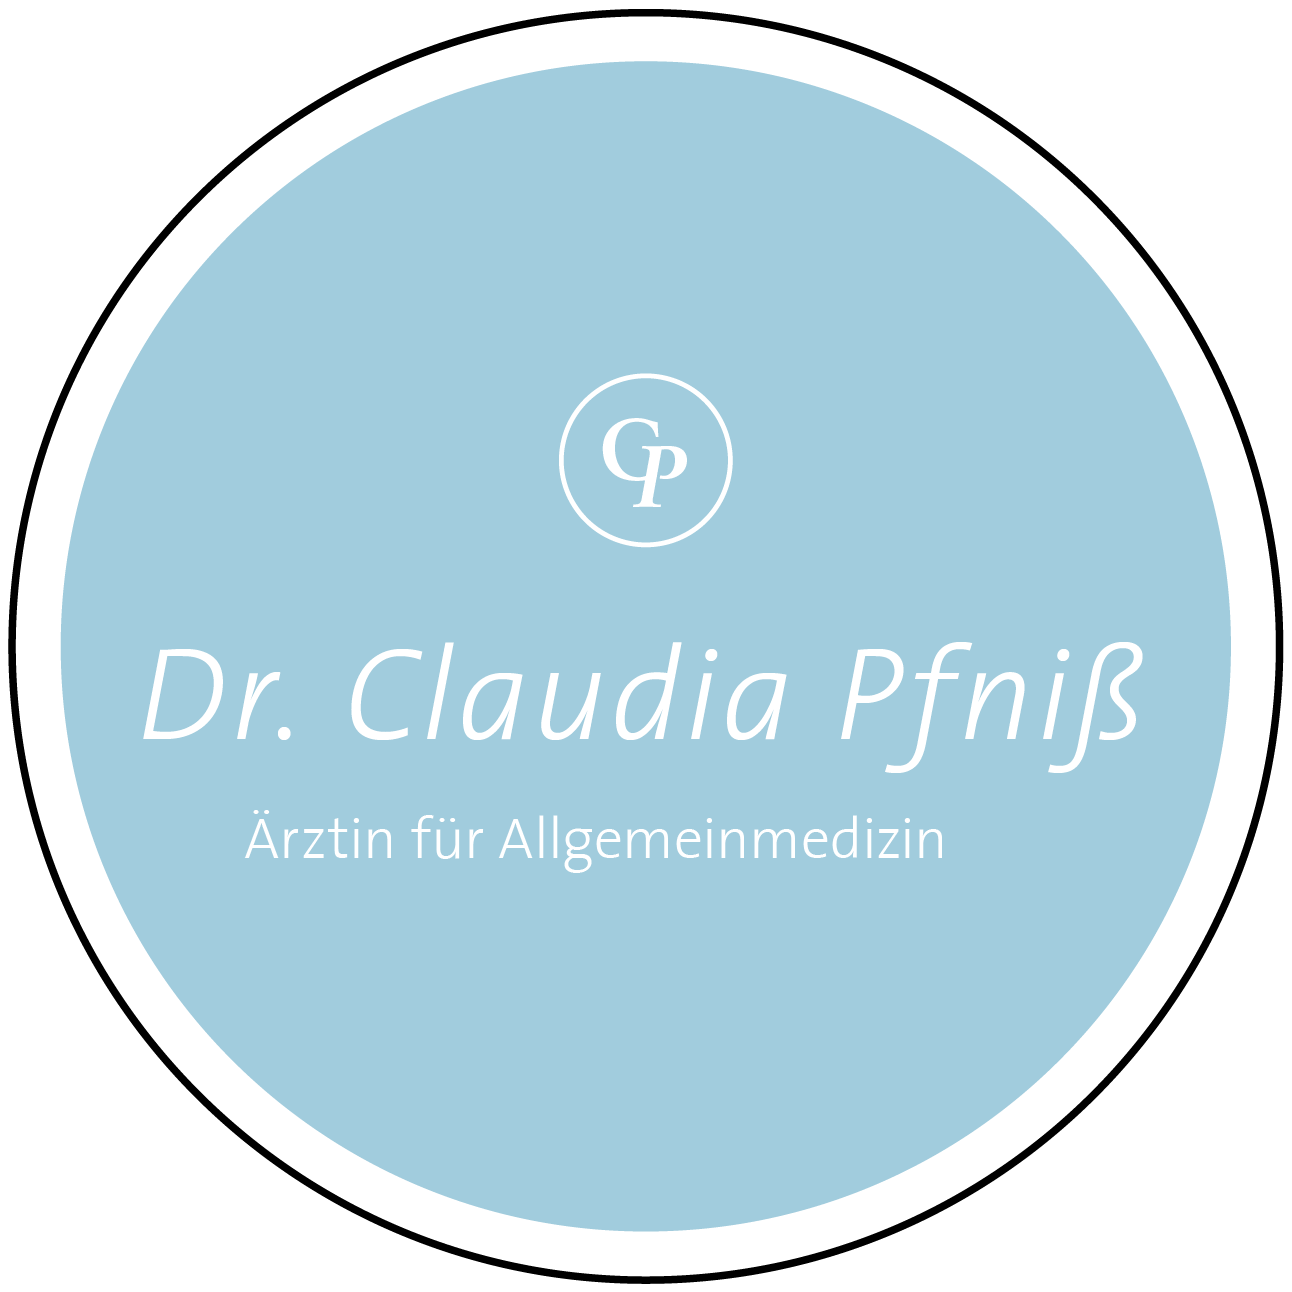 Dr. Claudia Pfniss